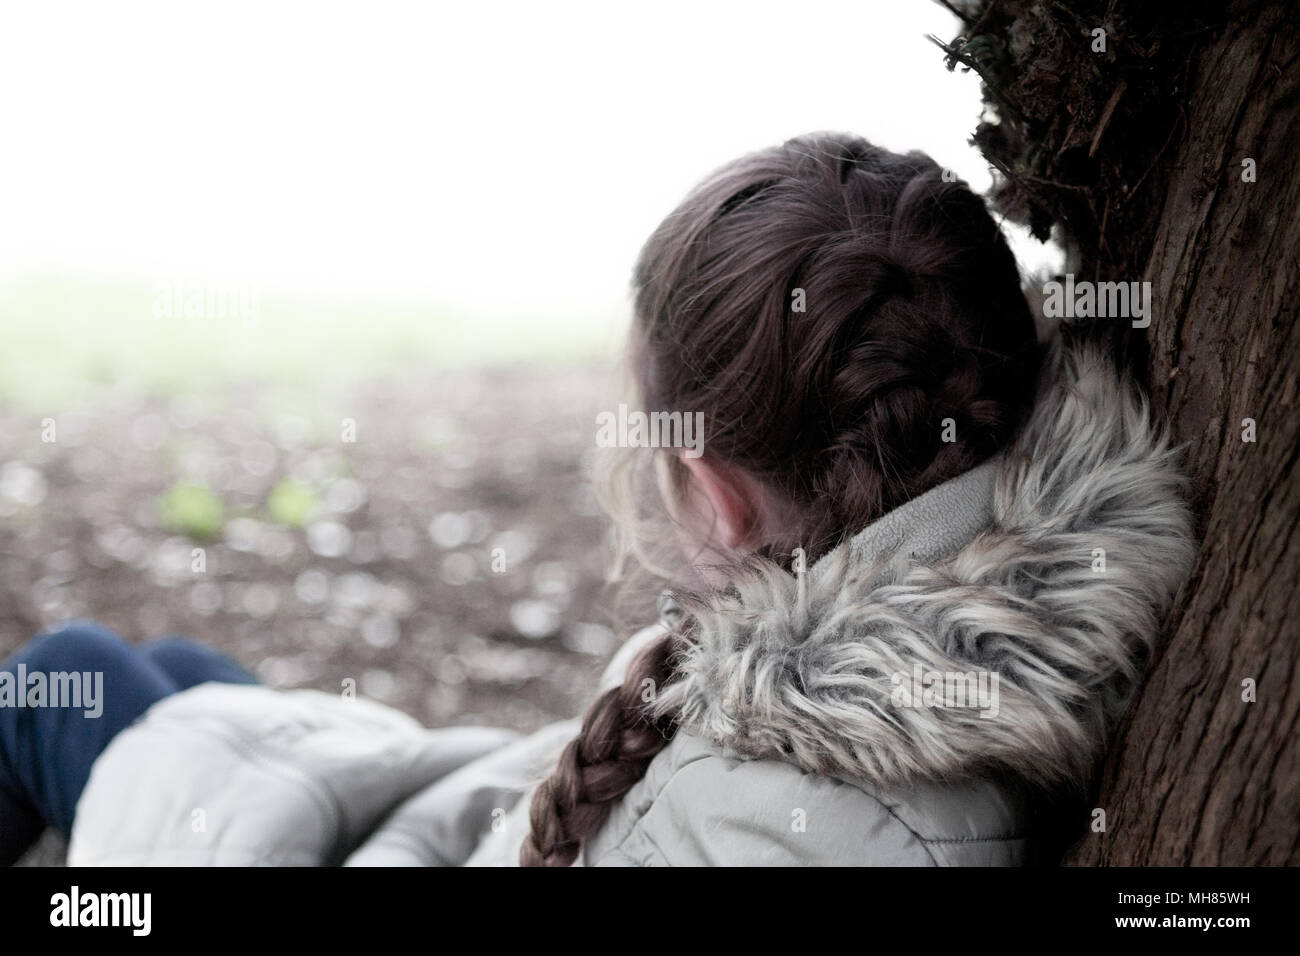 Une jeune fille (âgée de huit), s'est terminée au chaud dans un manteau de fourrure, s'appuie contre un arbre avec son dos à la caméra, dans une posture relâchée Banque D'Images